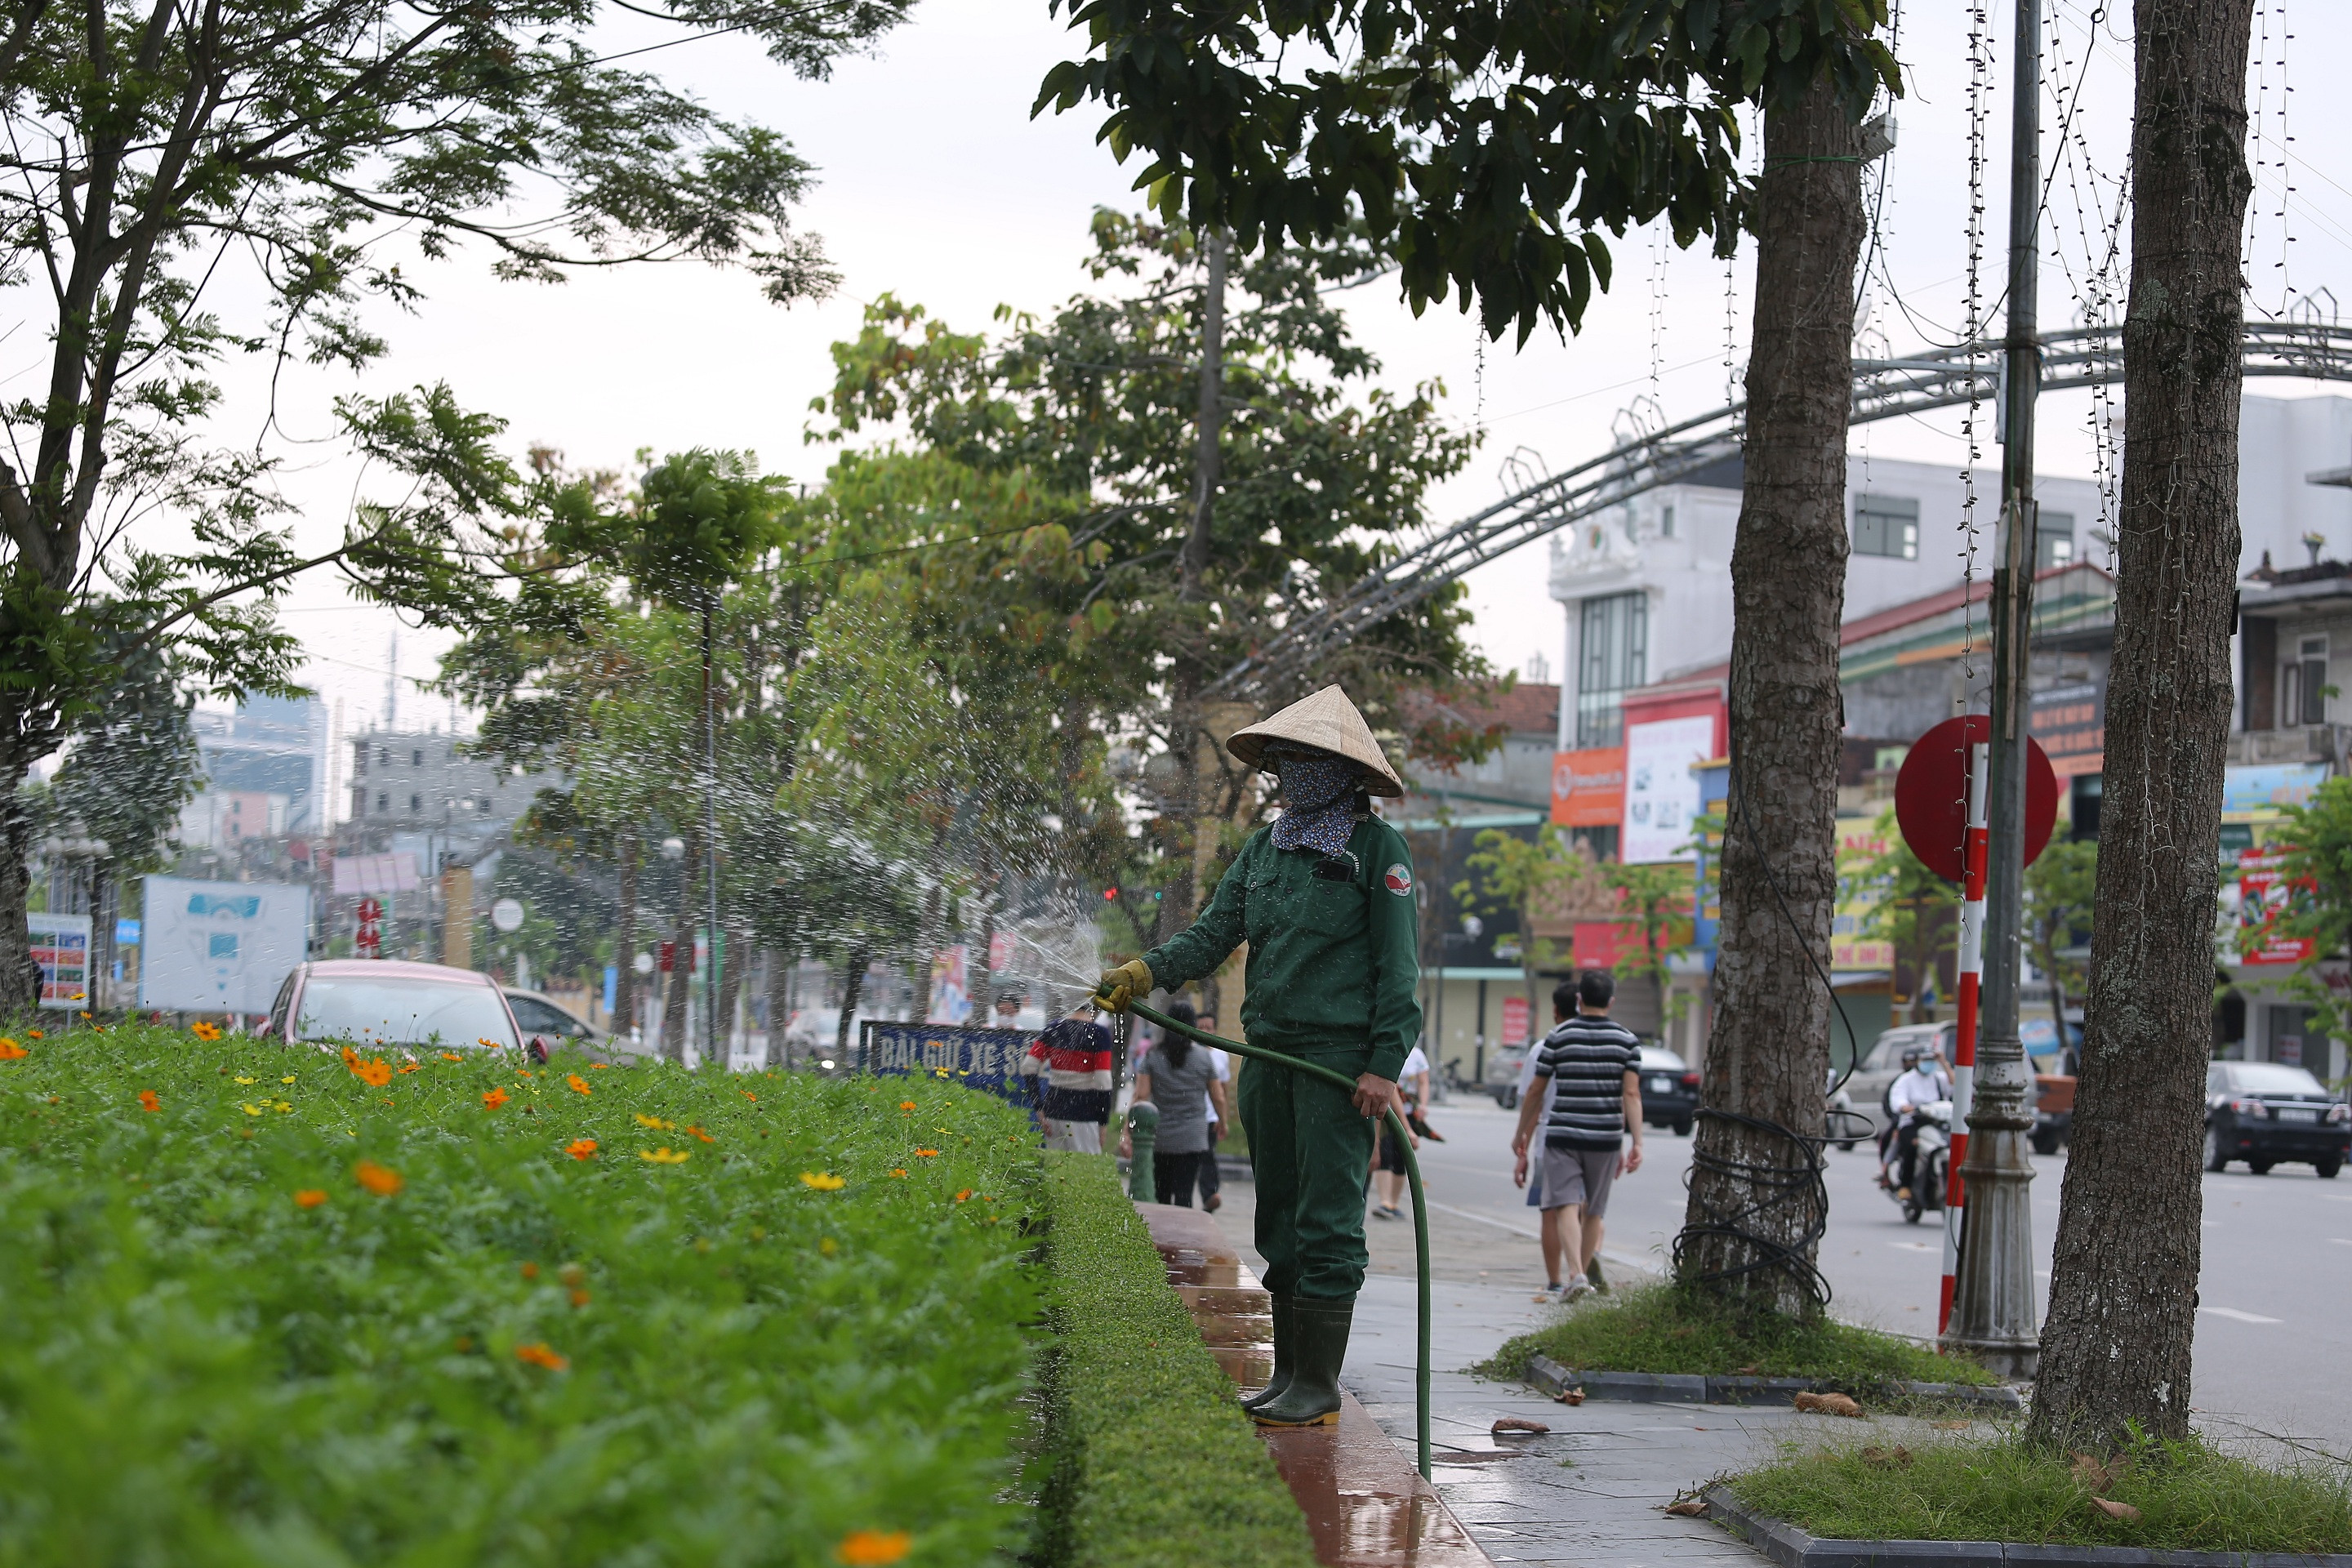 Chăm sóc cây xanh Quảng trường Hồ Chí Minh.